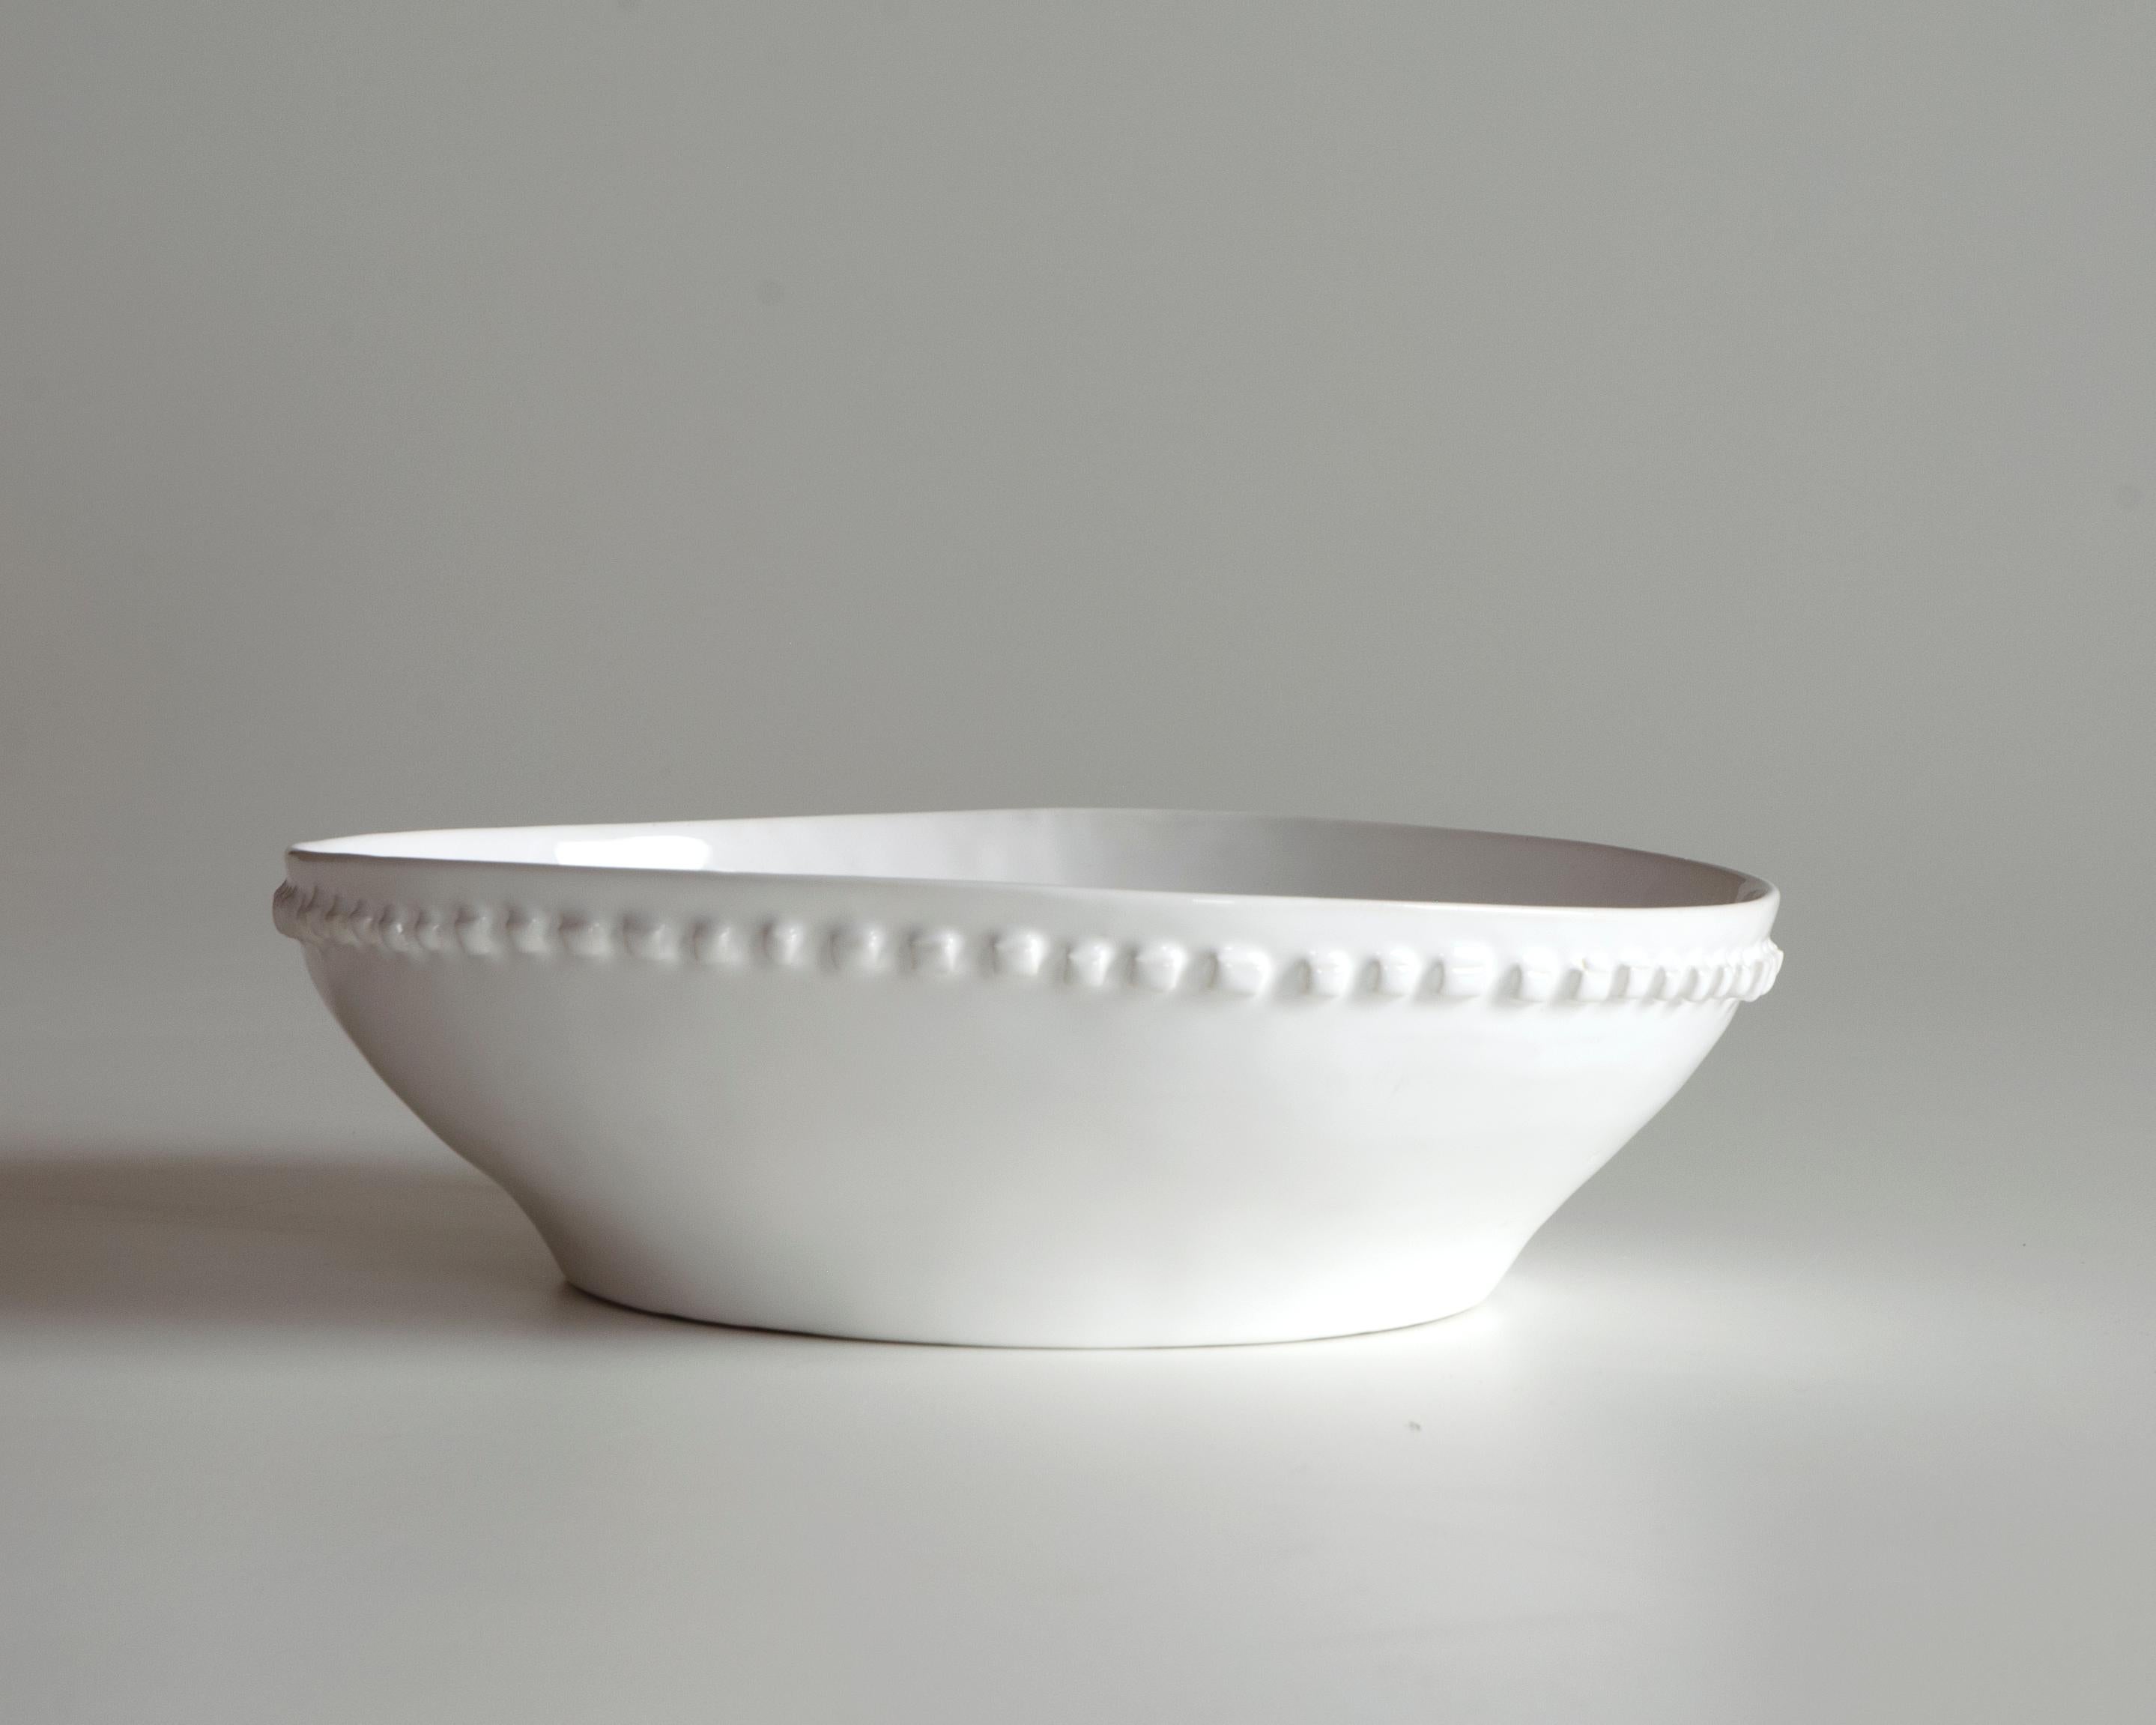 La ciotola in ceramica bianca ha una decorazione a rilievo. Jeder kleine Quast wird von Hand gefertigt und verleiht jedem einen einzigartigen Charakter. Die mit der Technik des Eintauchens angewendete Glätte mit ihren kleinen Unregelmäßigkeiten